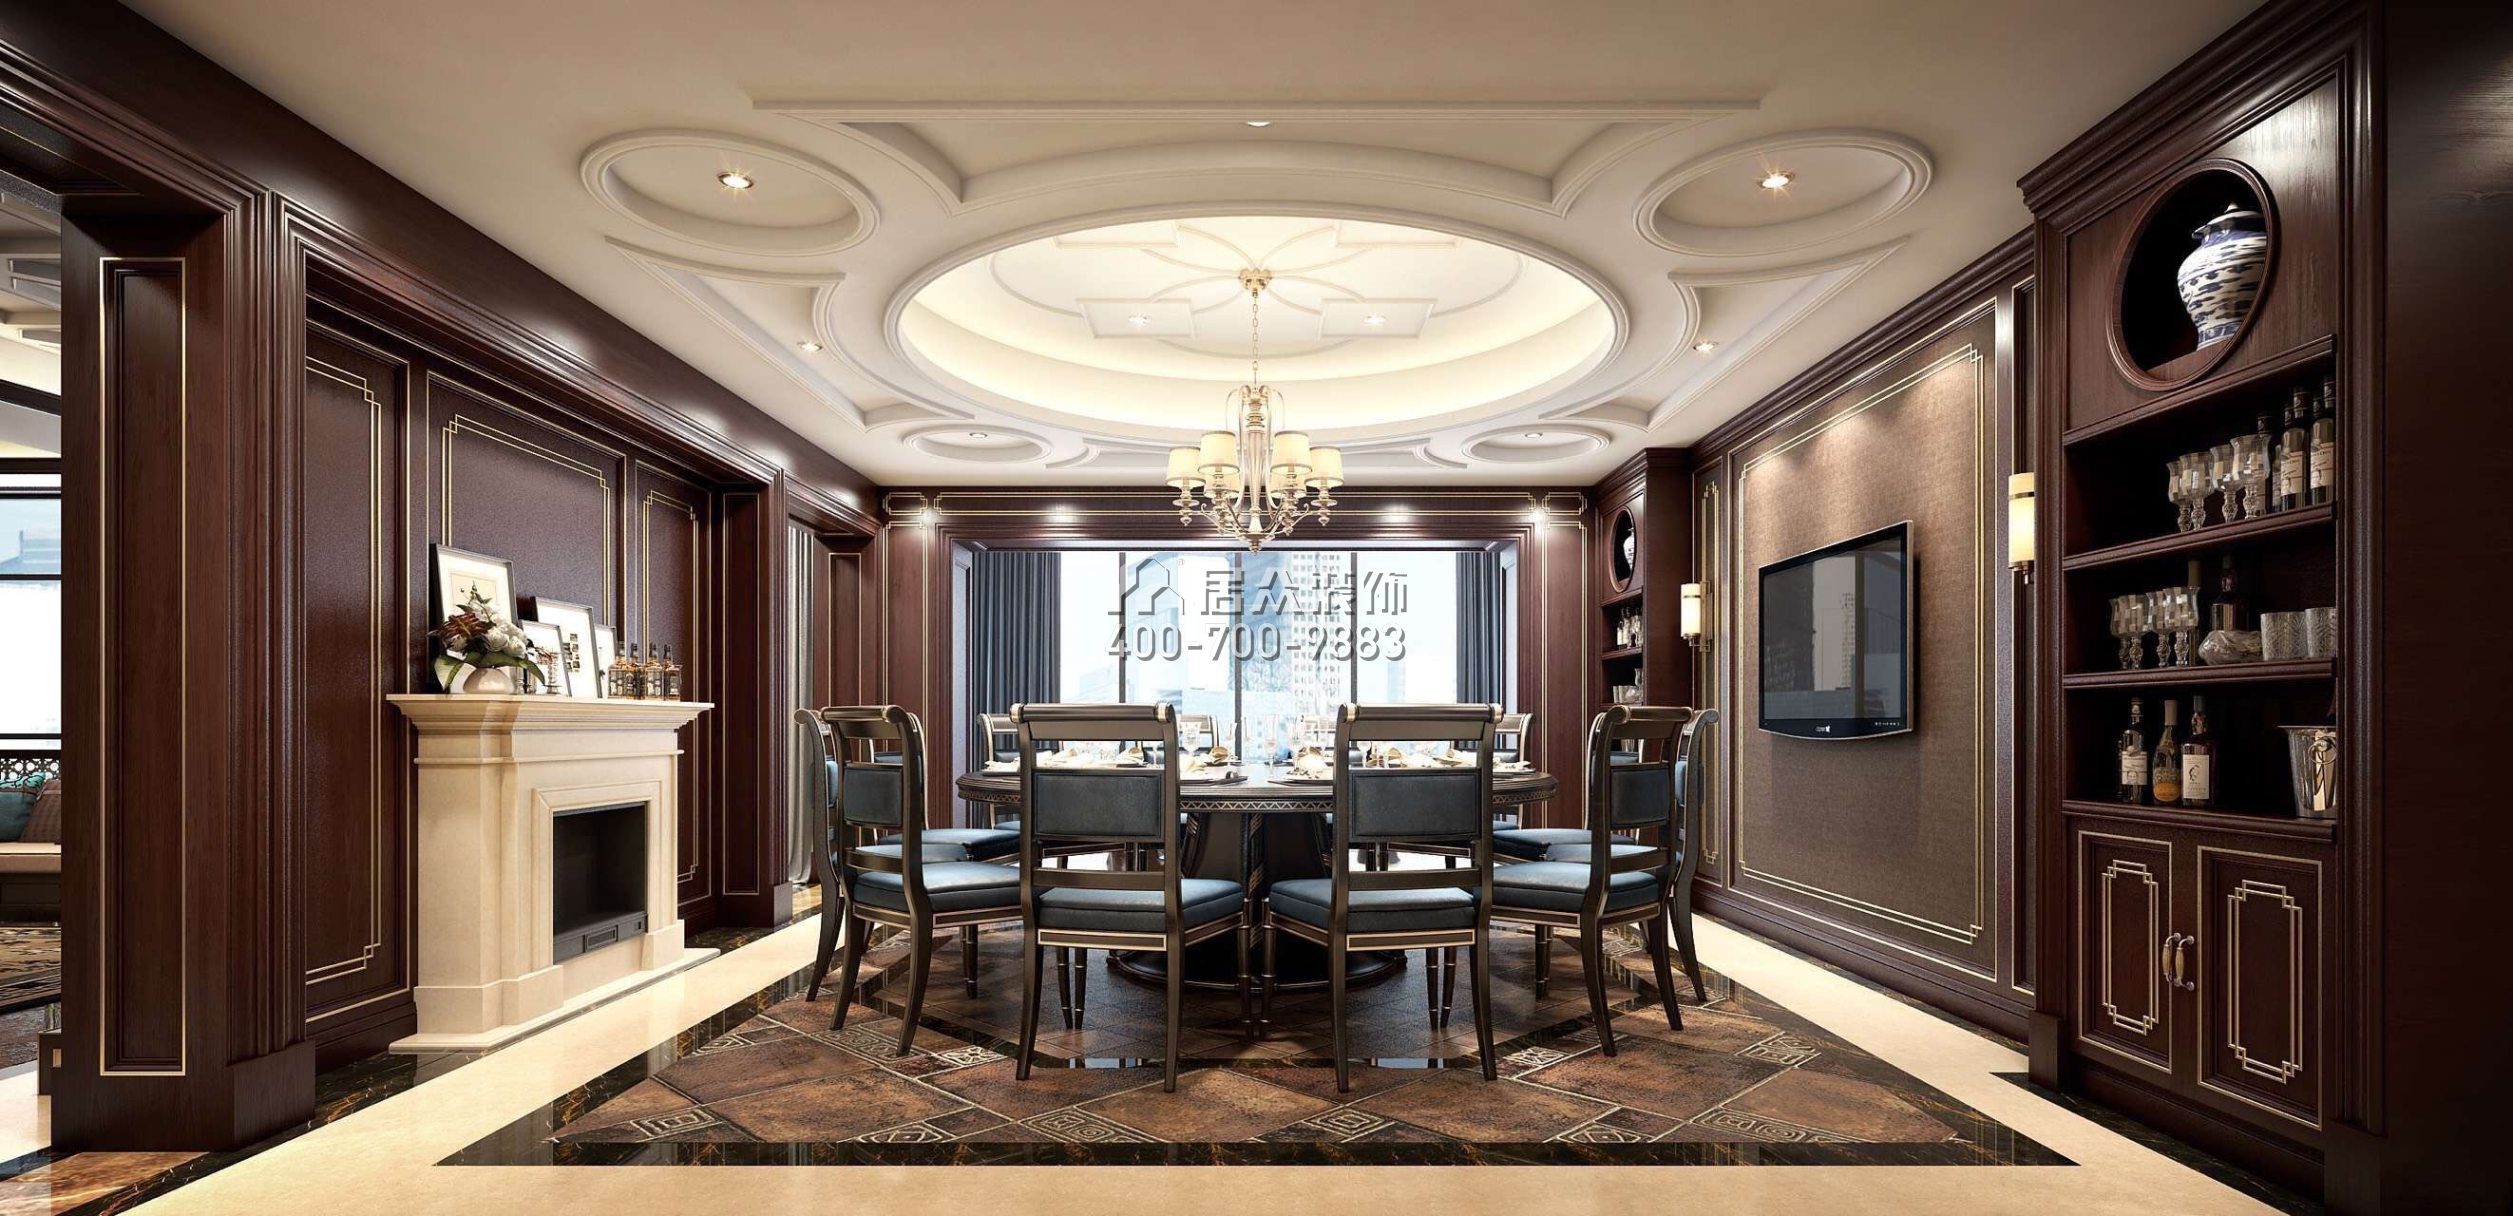 藏龙280平方米美式风格平层户型餐厅装修效果图